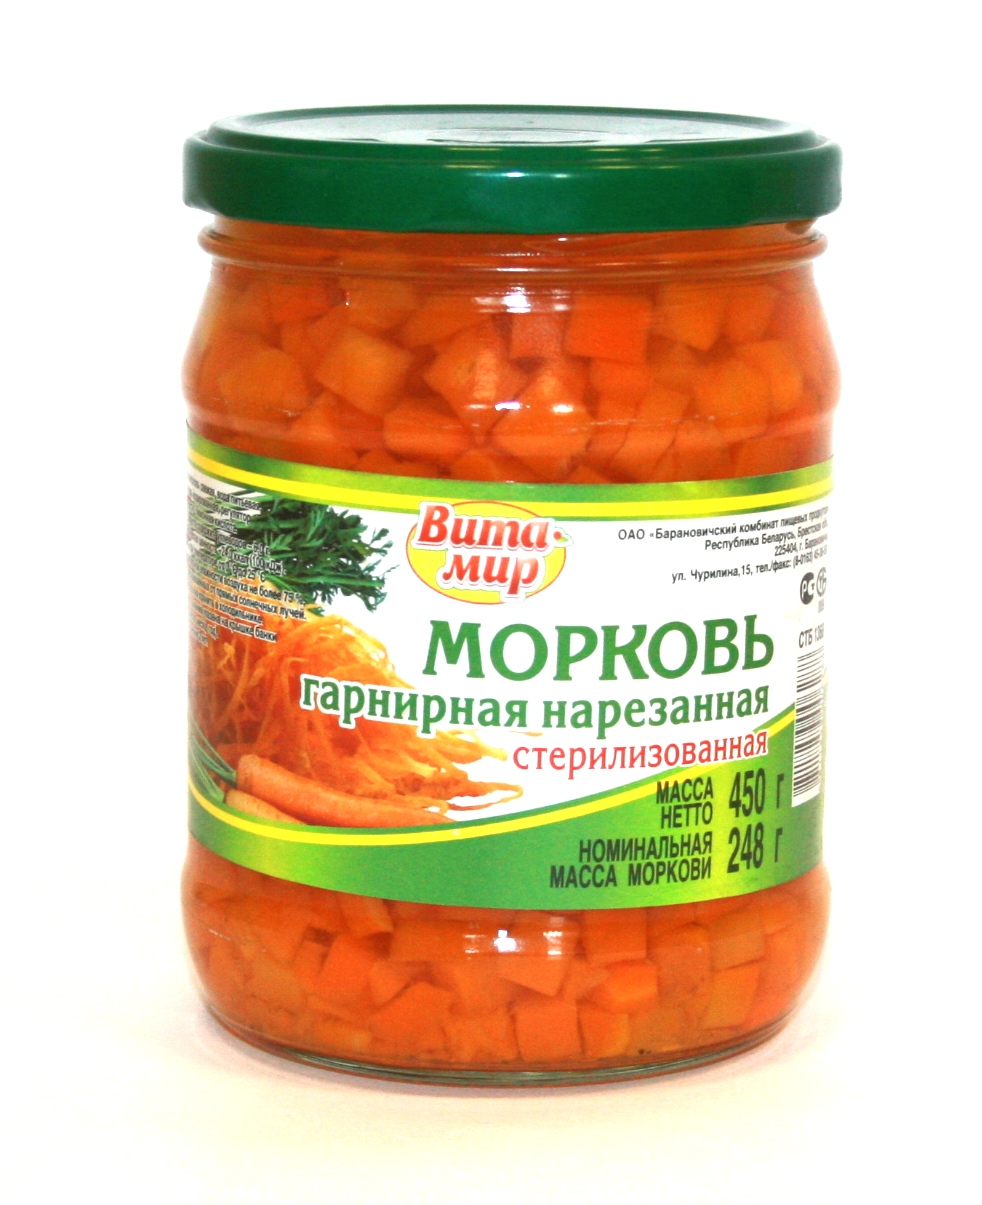 Белорусские продукты 1107